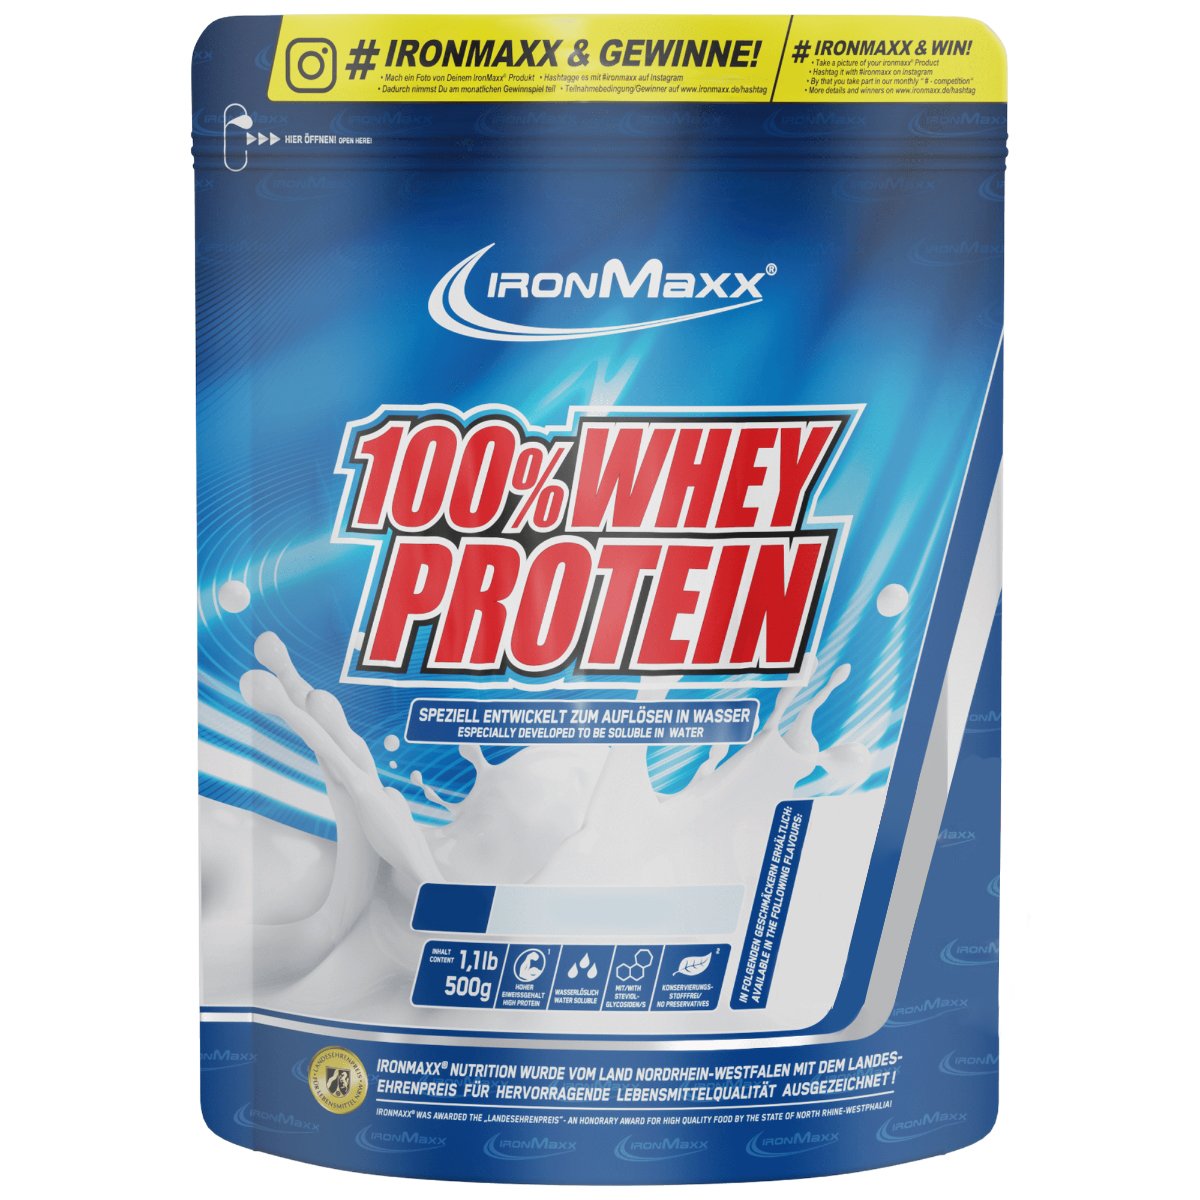 IronMaxx Протеин Ironmaxx 100% Whey Protein, 500 грамм Фисташка-кокос, , 500 грамм